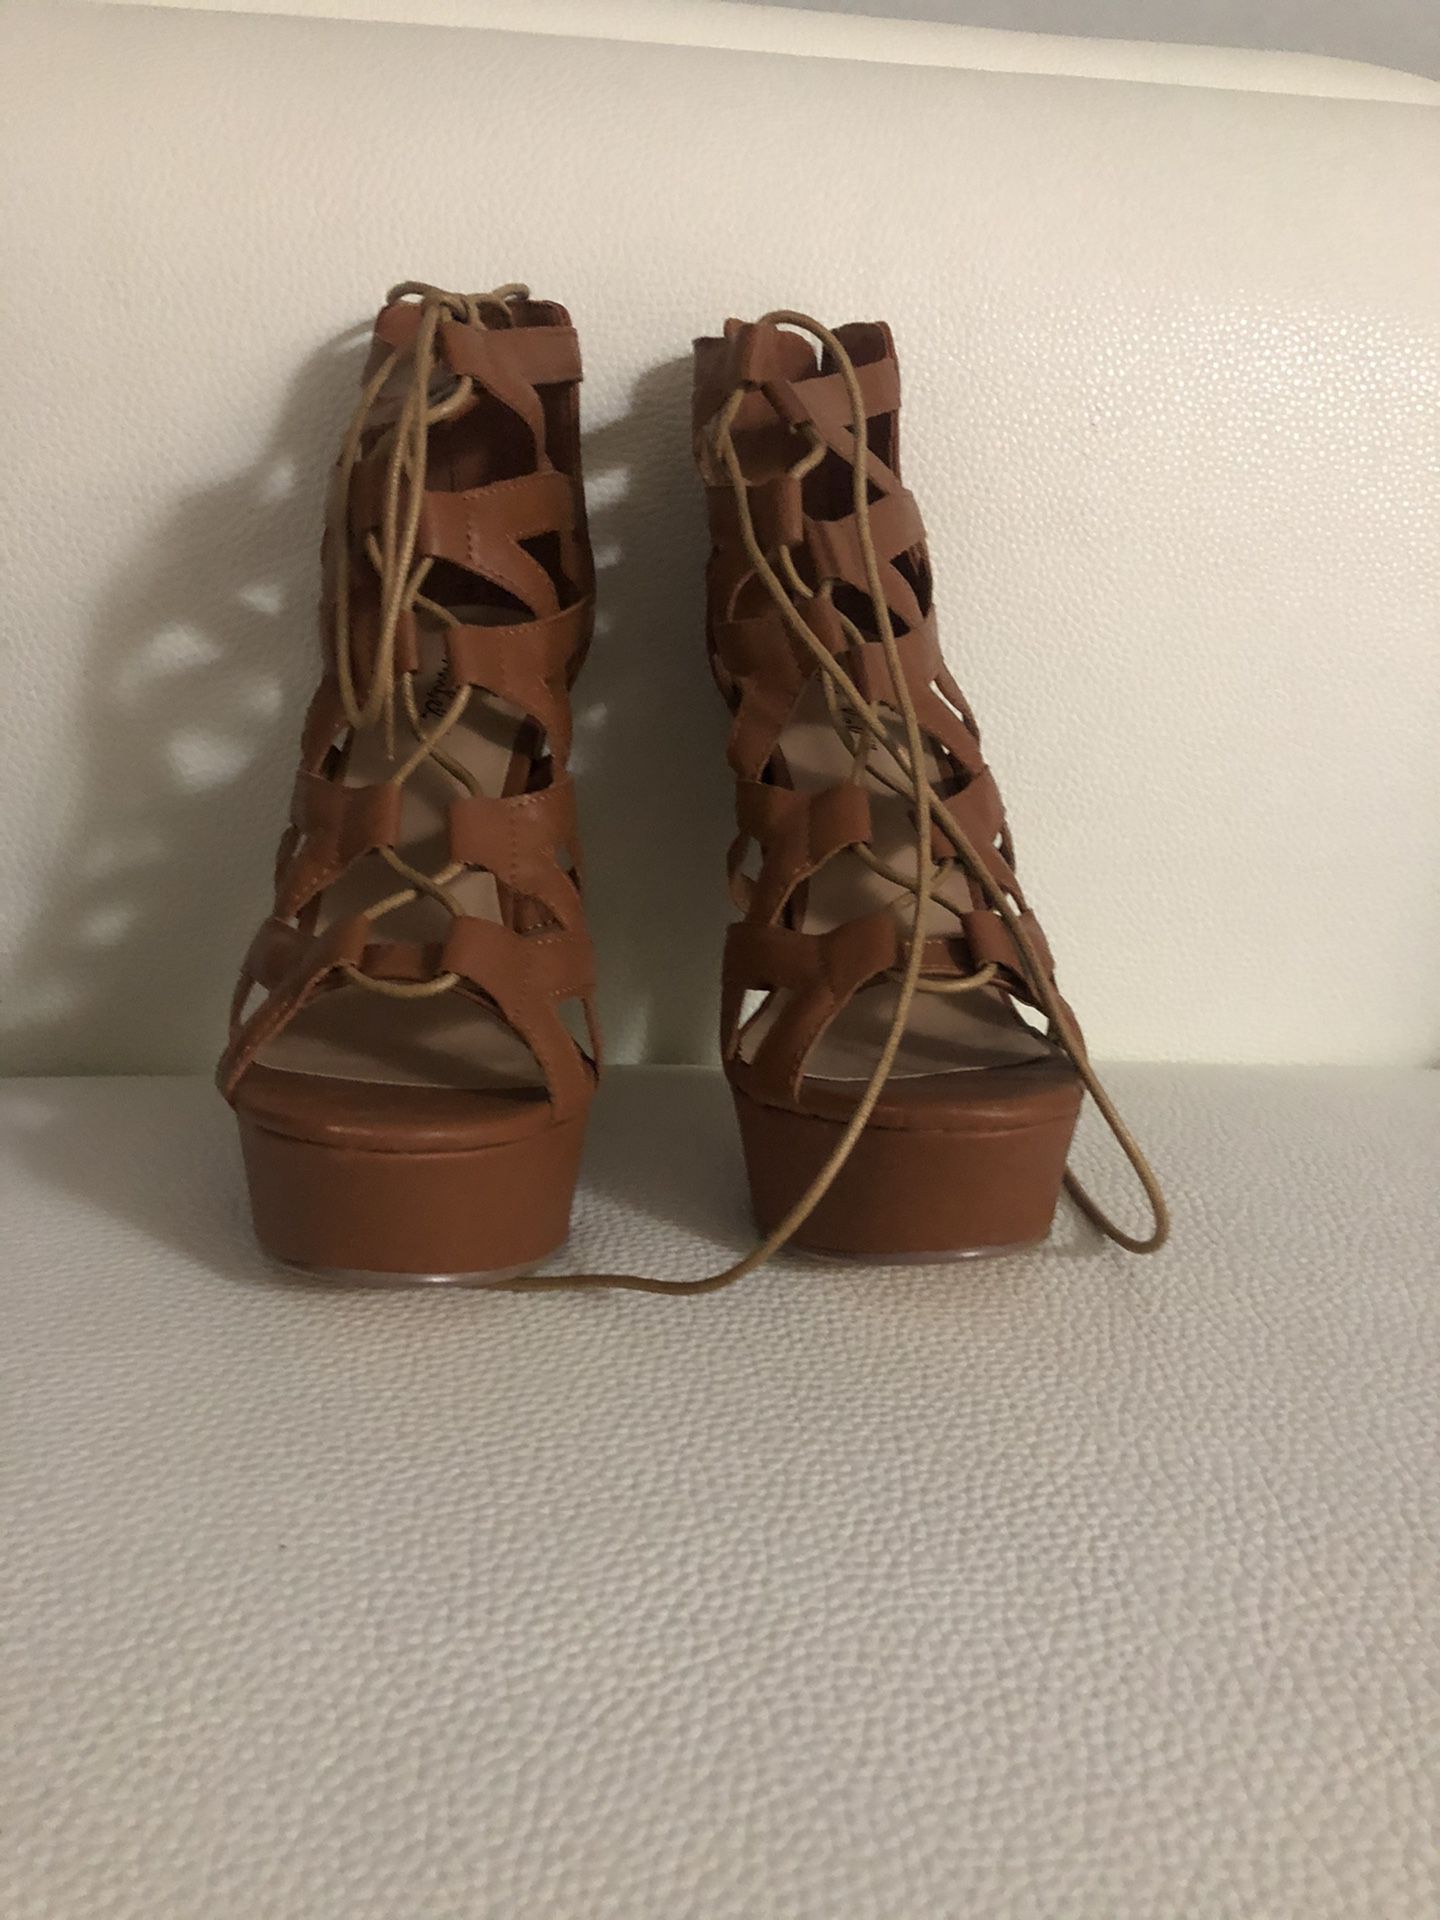 Light brown high heels